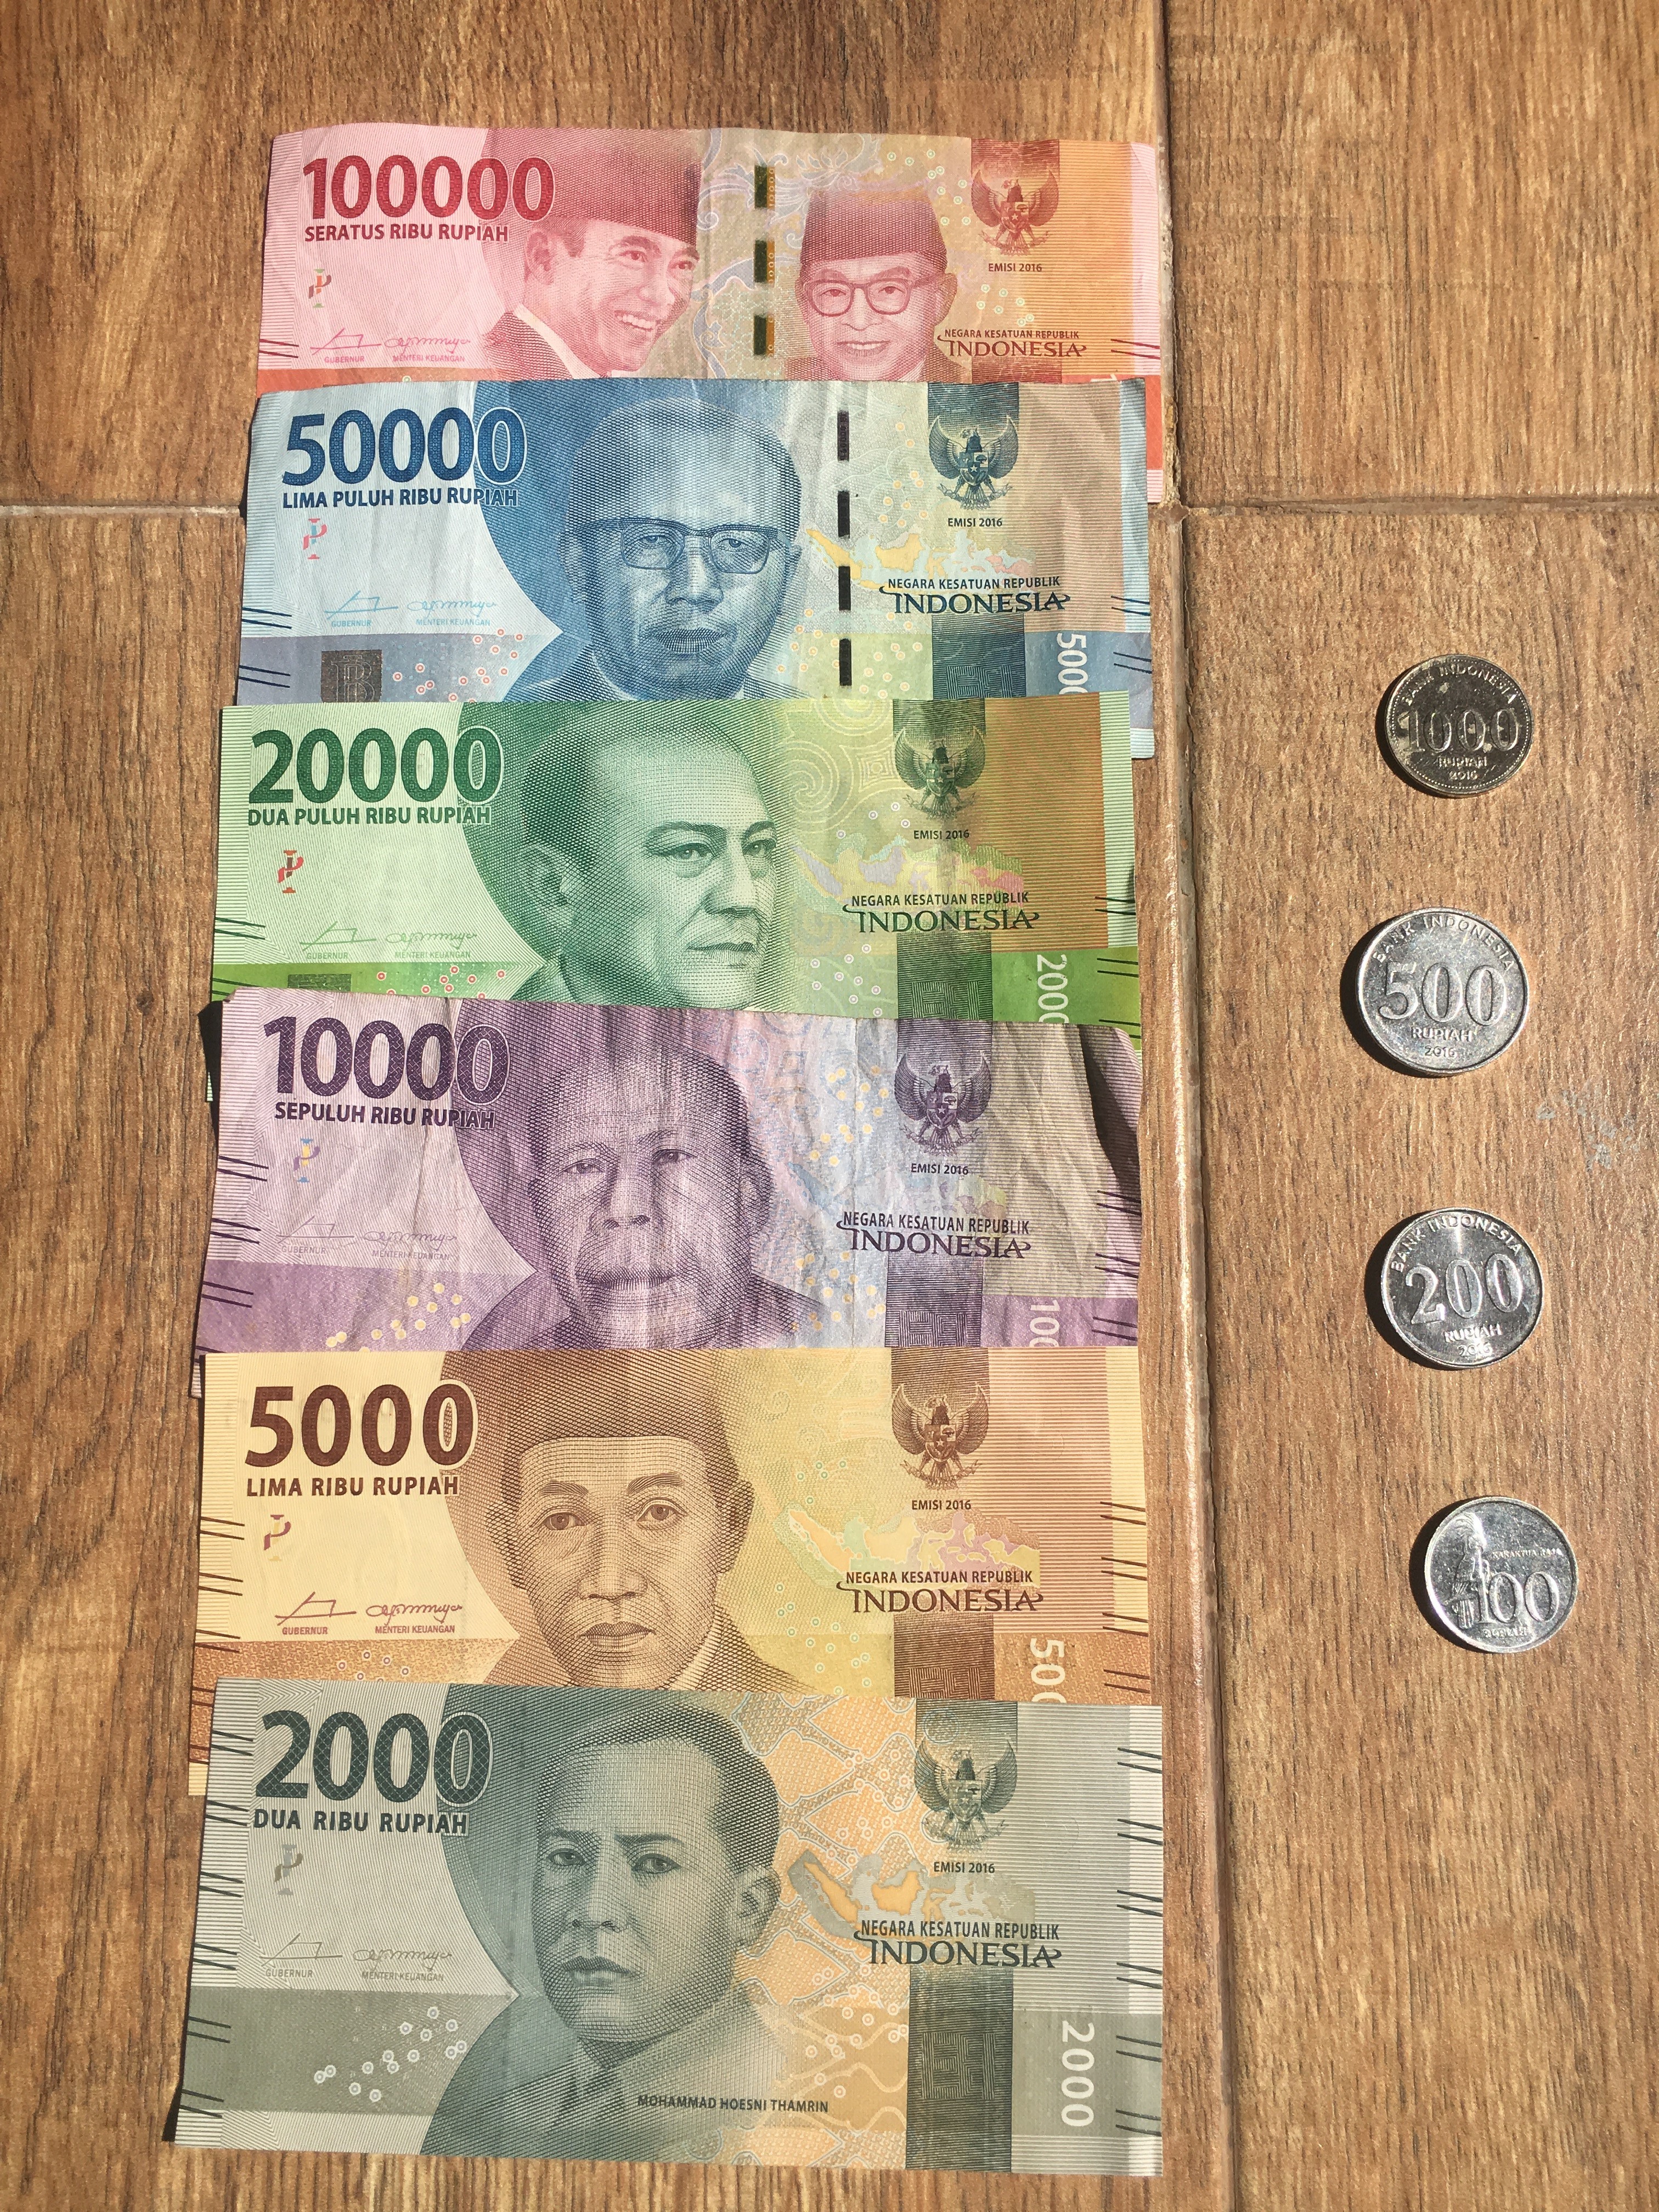 19年 インドネシア バリ島のレートの良い両替所 日本円 インドネシアルピア のおすすめ両替方法を解説 ロコタビ